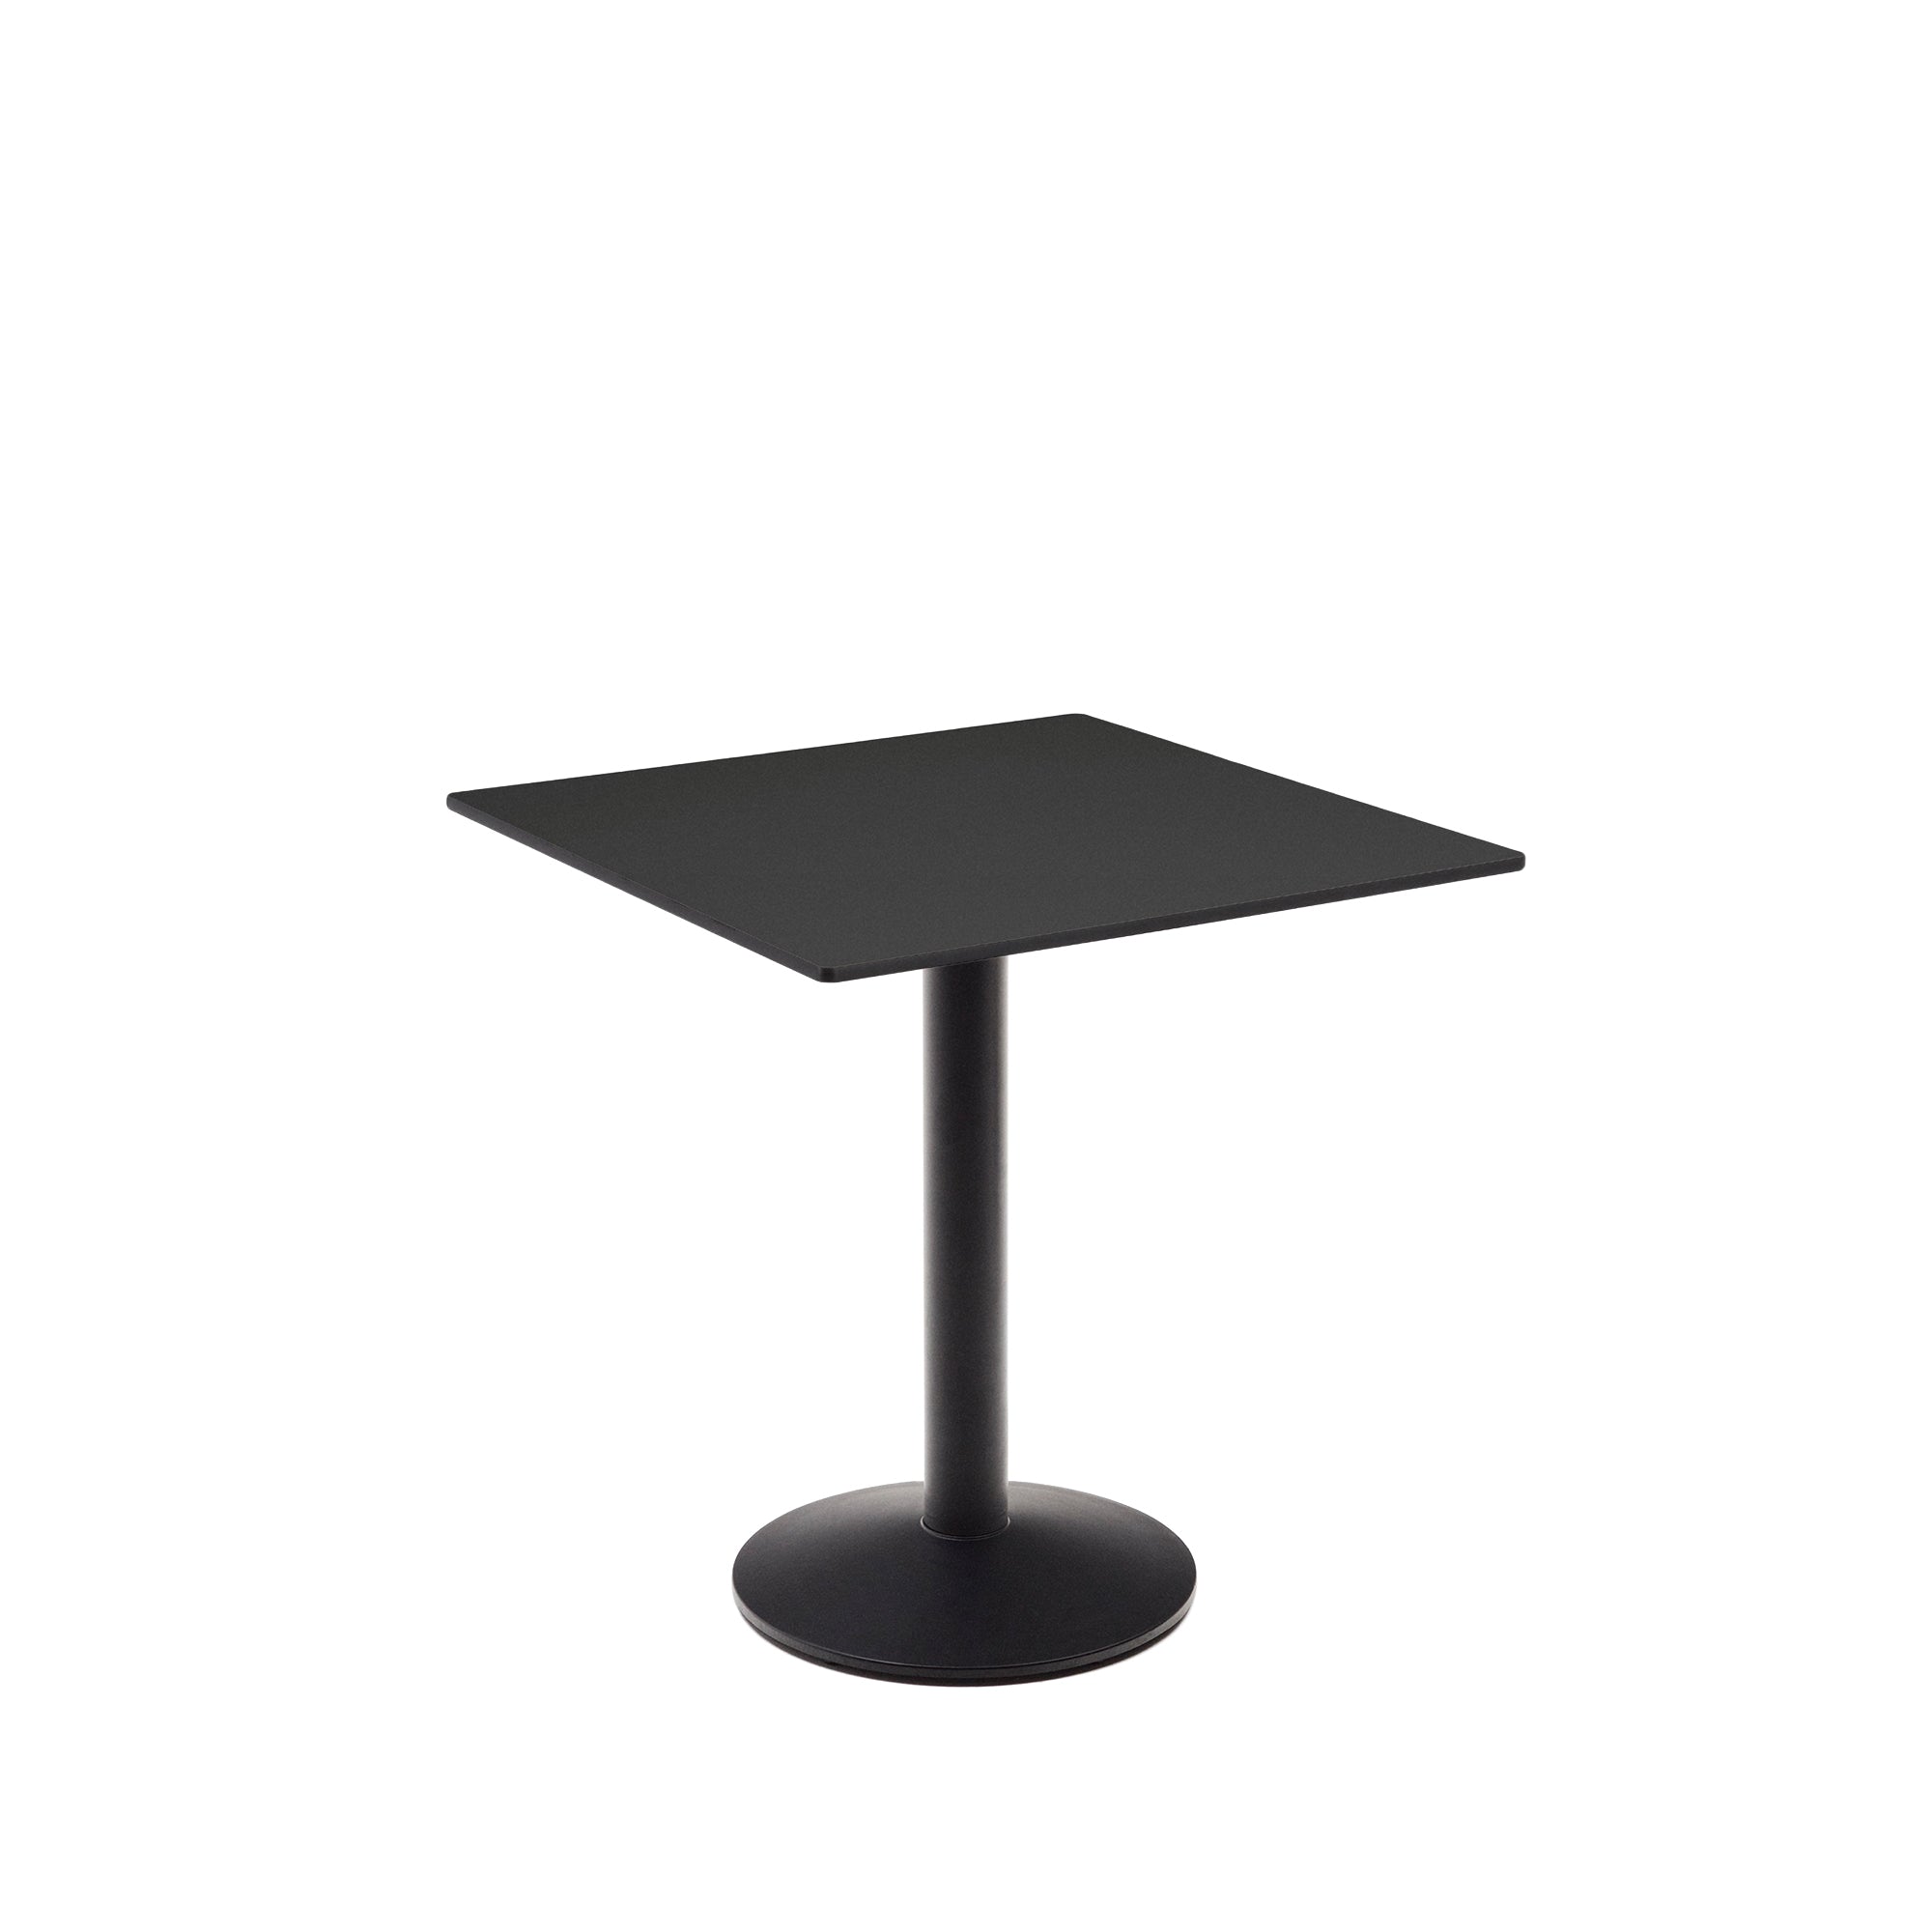 Esilda kültéri asztal fekete színben, fémlábbal, festett fekete kivitelben, 70 x 70 x 70 cm